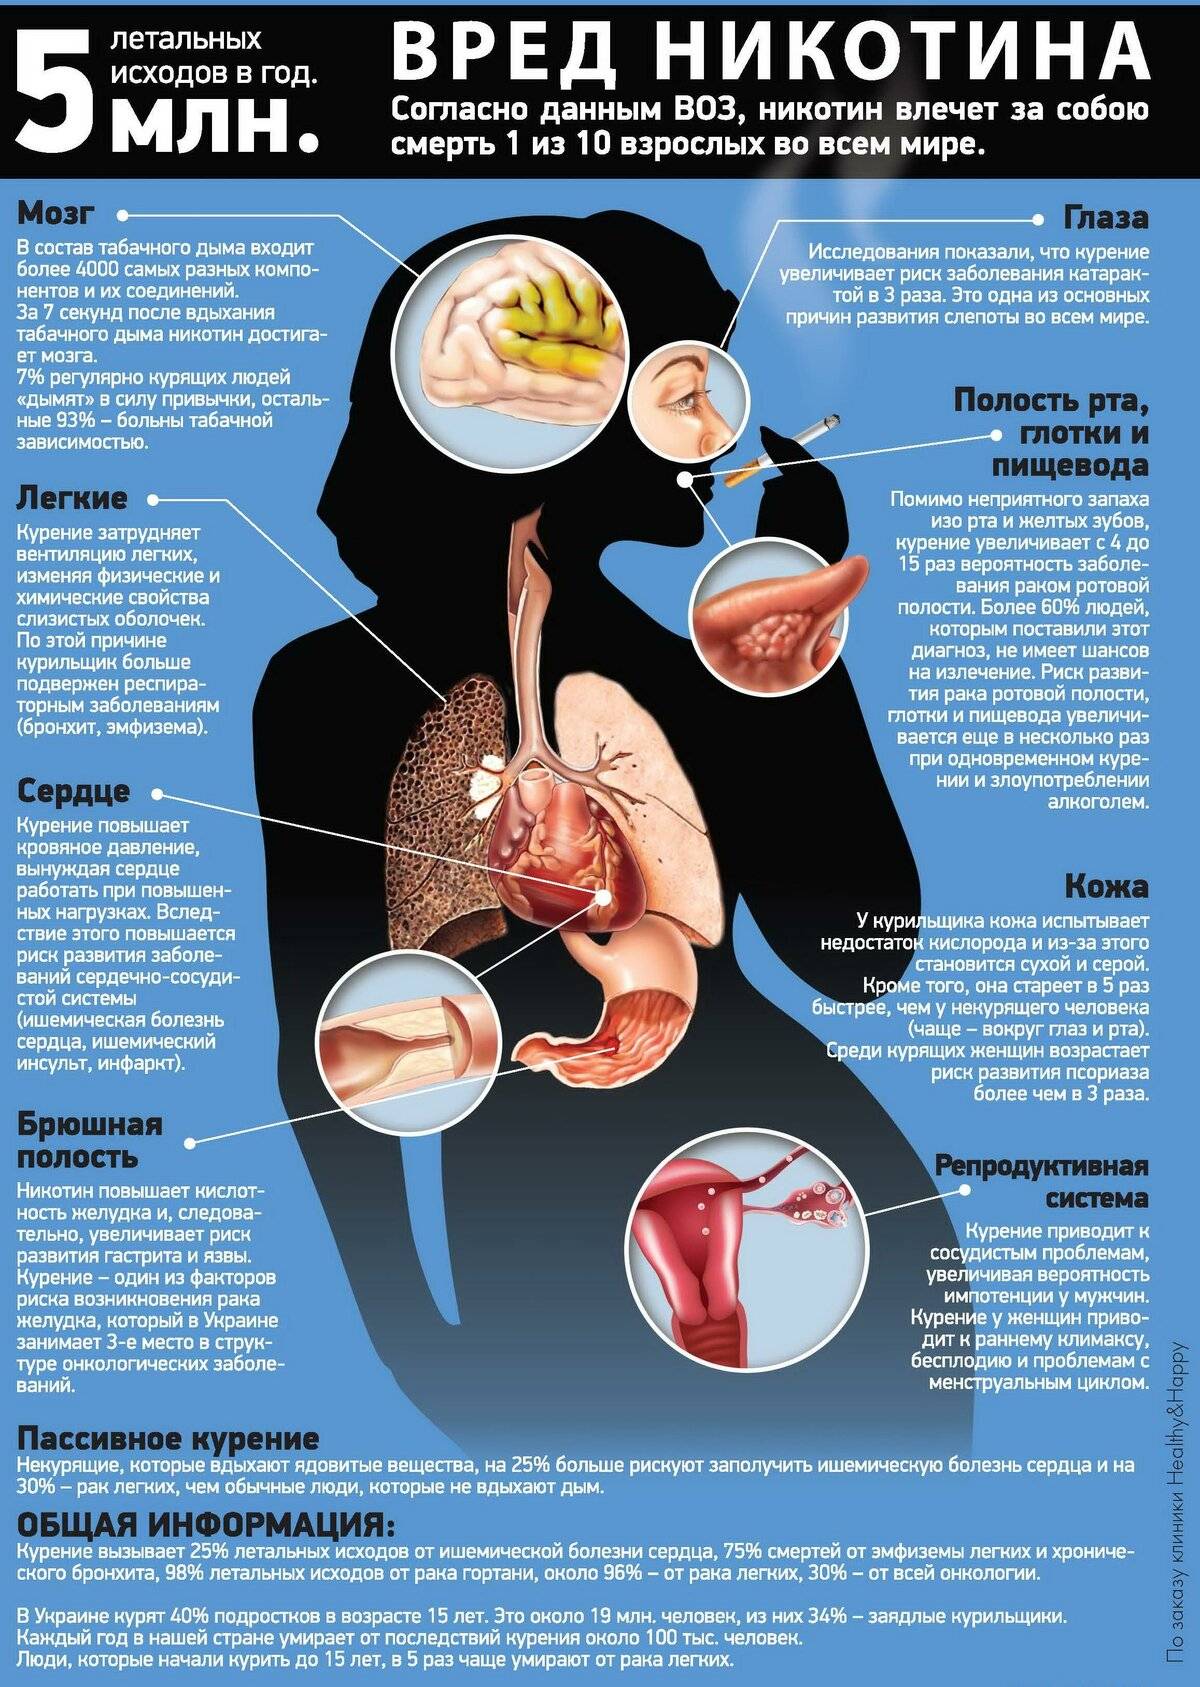 Курение при язве желудка и 12-перстной кишки и последствия